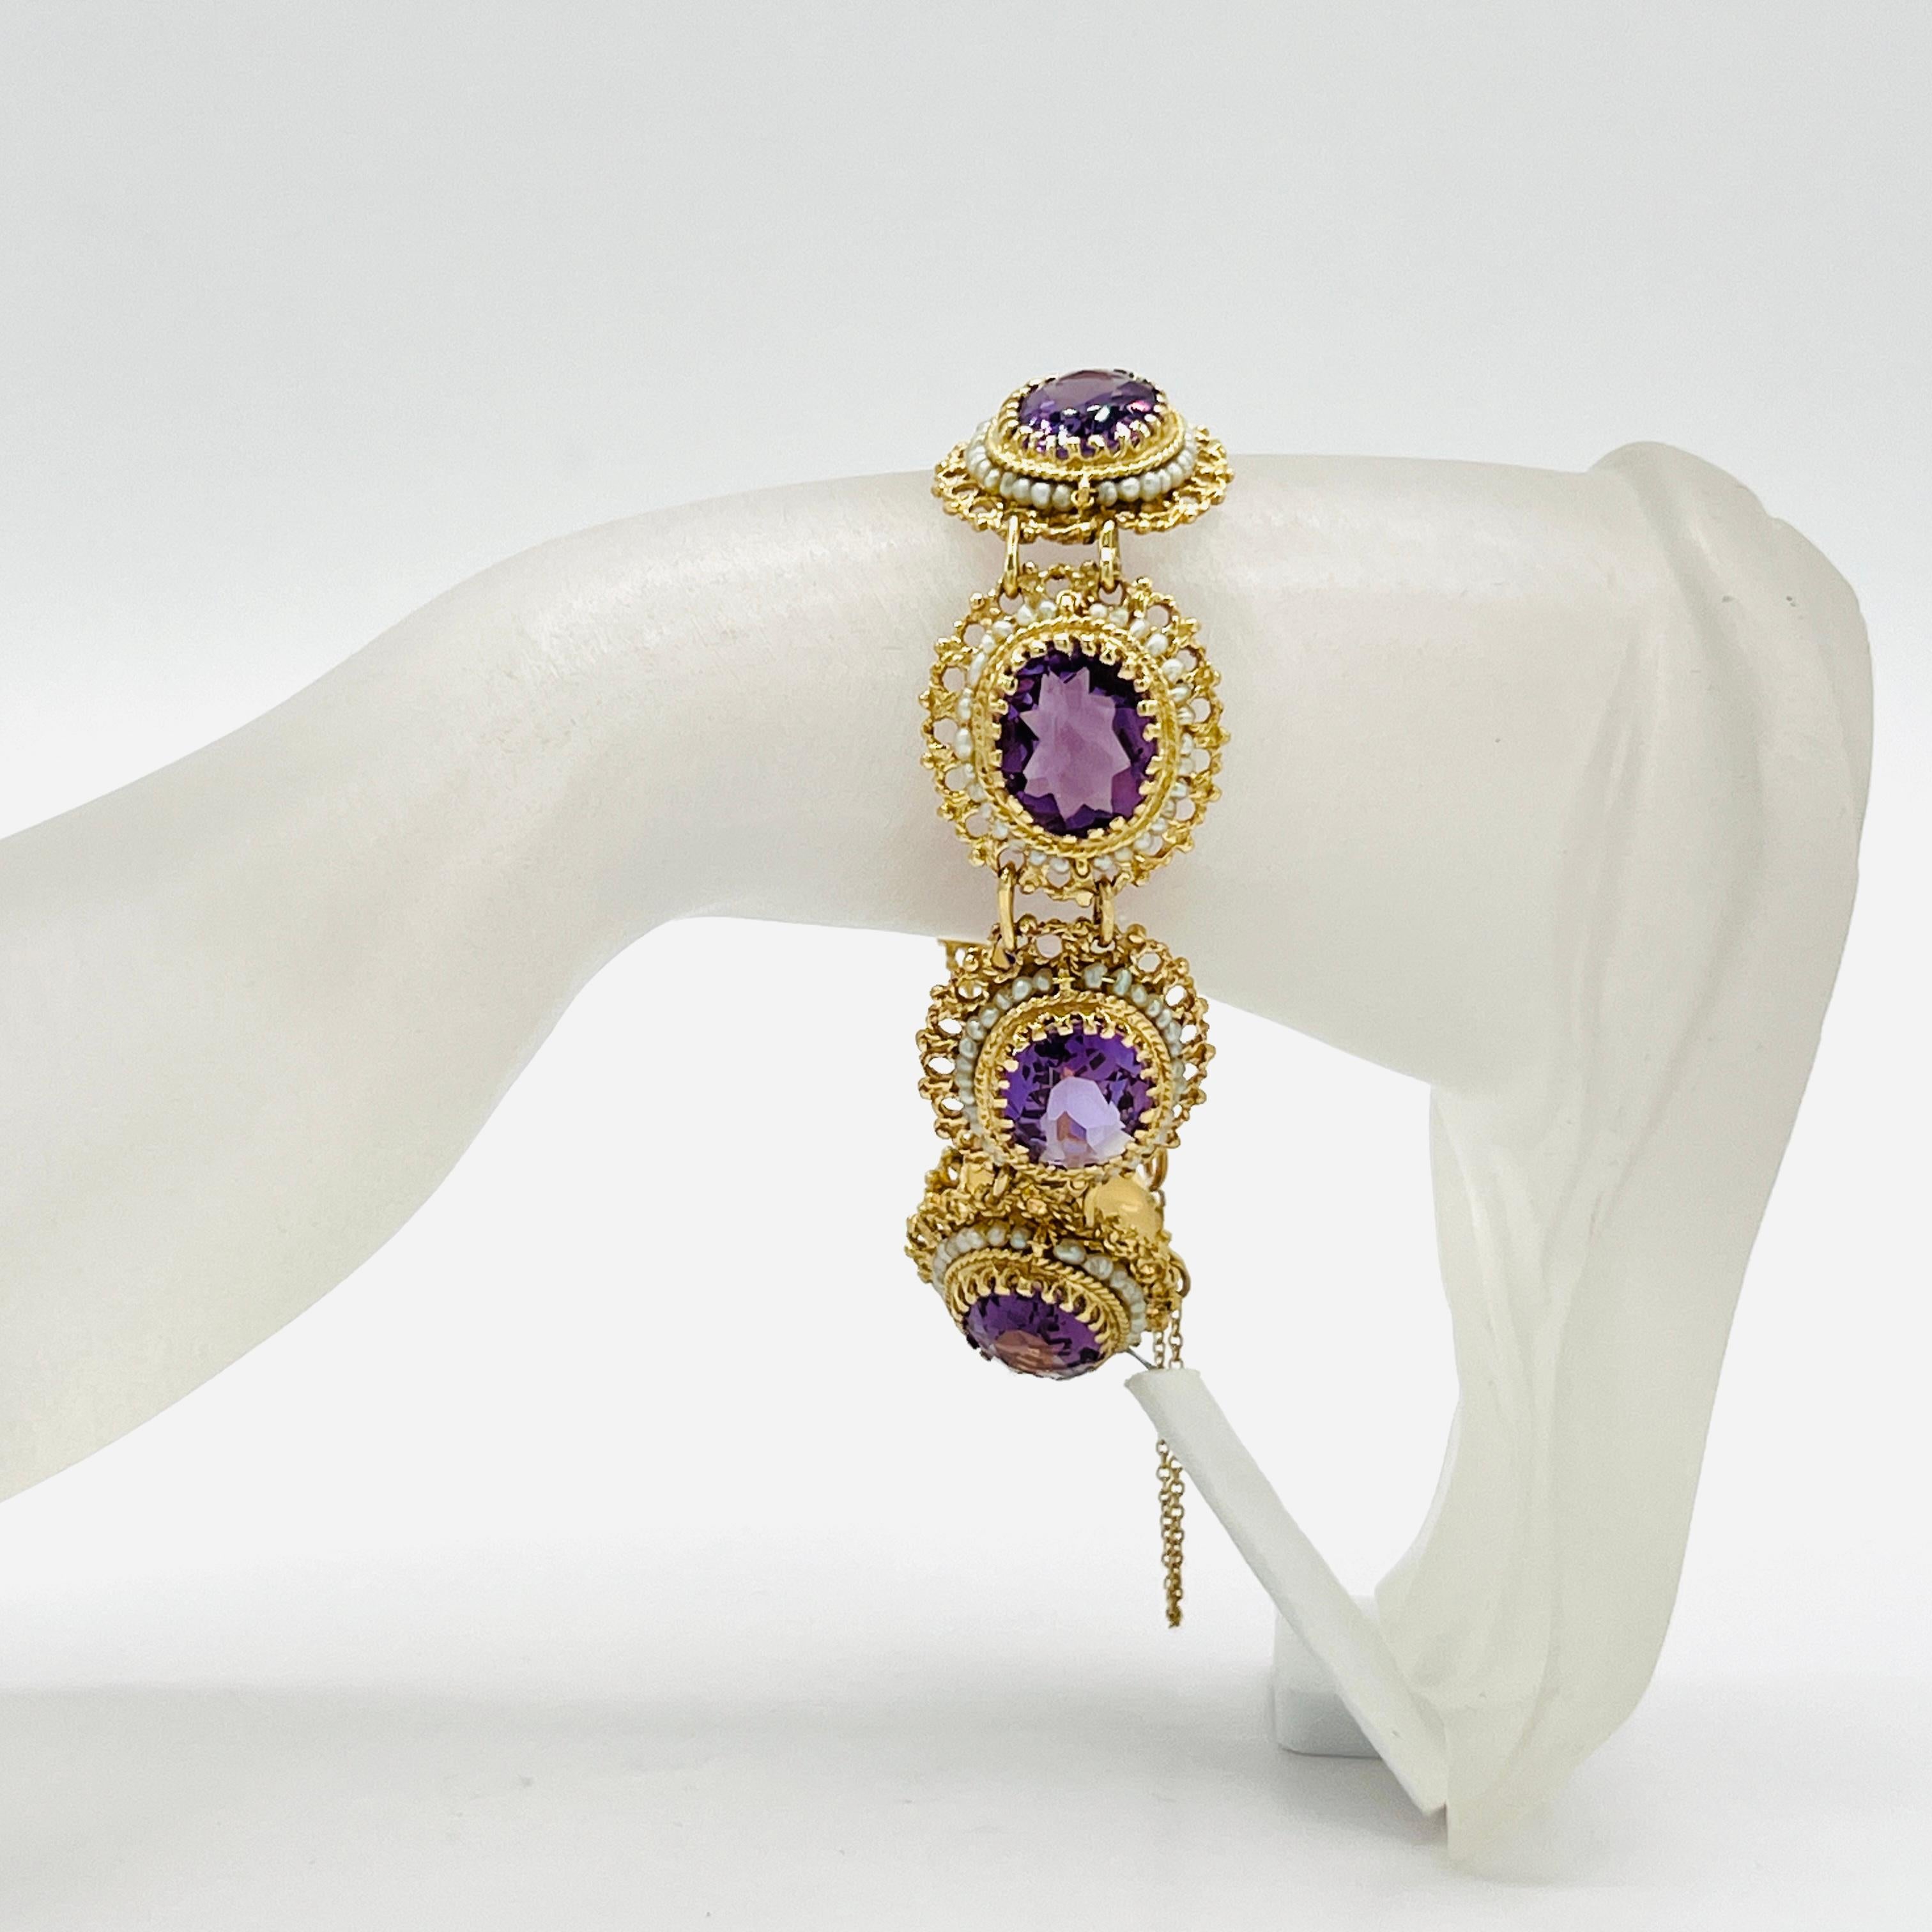 Magnifique ovale de 8 améthystes et perles blanches dans une monture en or jaune 14k faite à la main.  La longueur est de 7